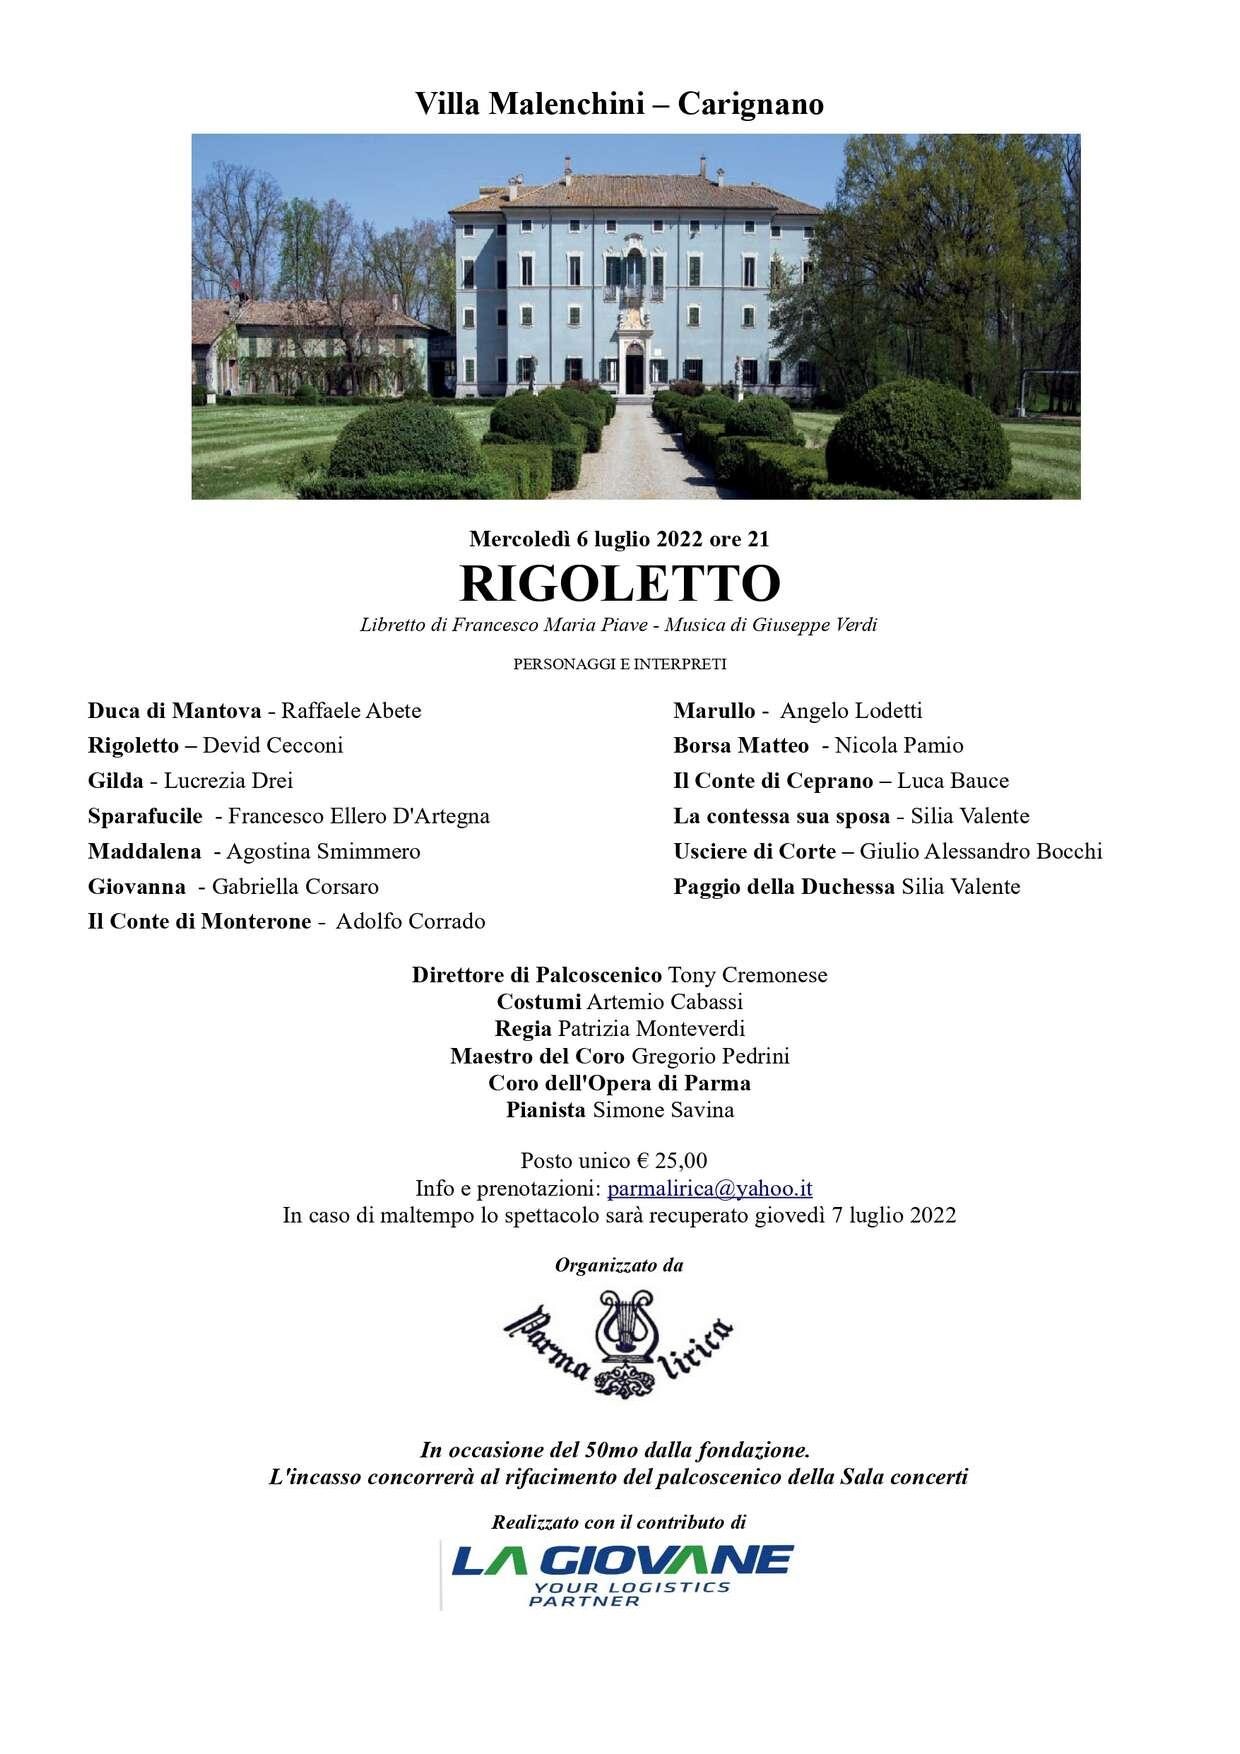 Rigoletto  Villa Malenchini Carignano